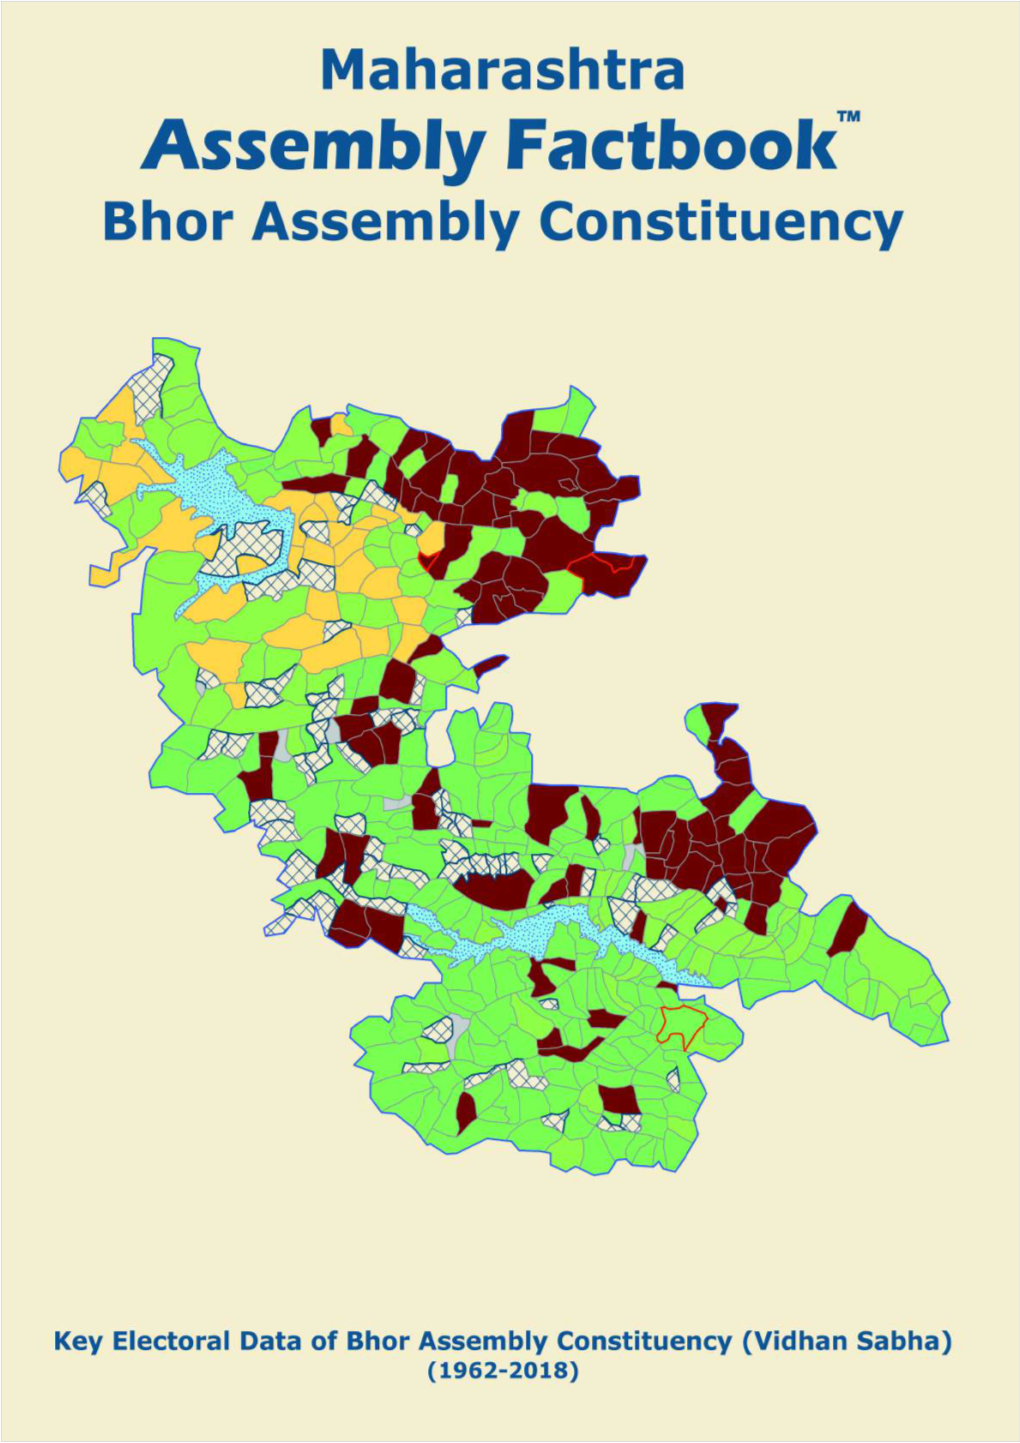 Bhor Assembly Maharashtra Factbook